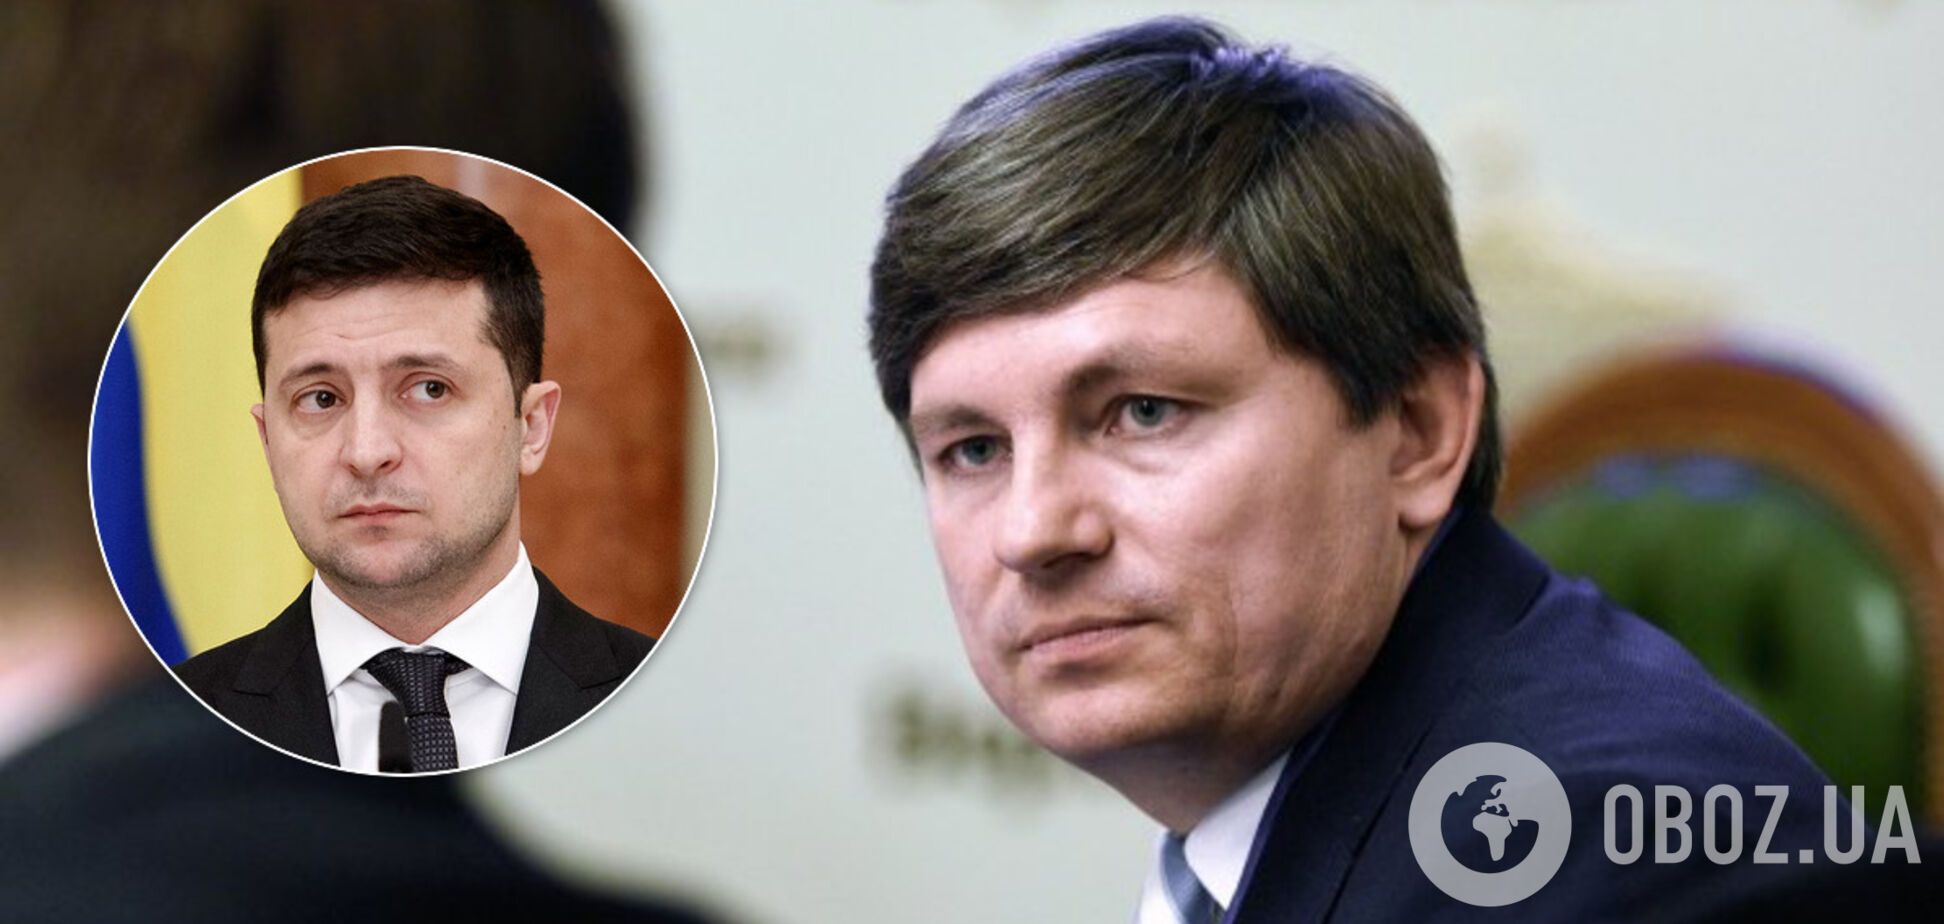 Зеленский пришел к власти на лжи и ведет Украину в пропасть – Герасимов